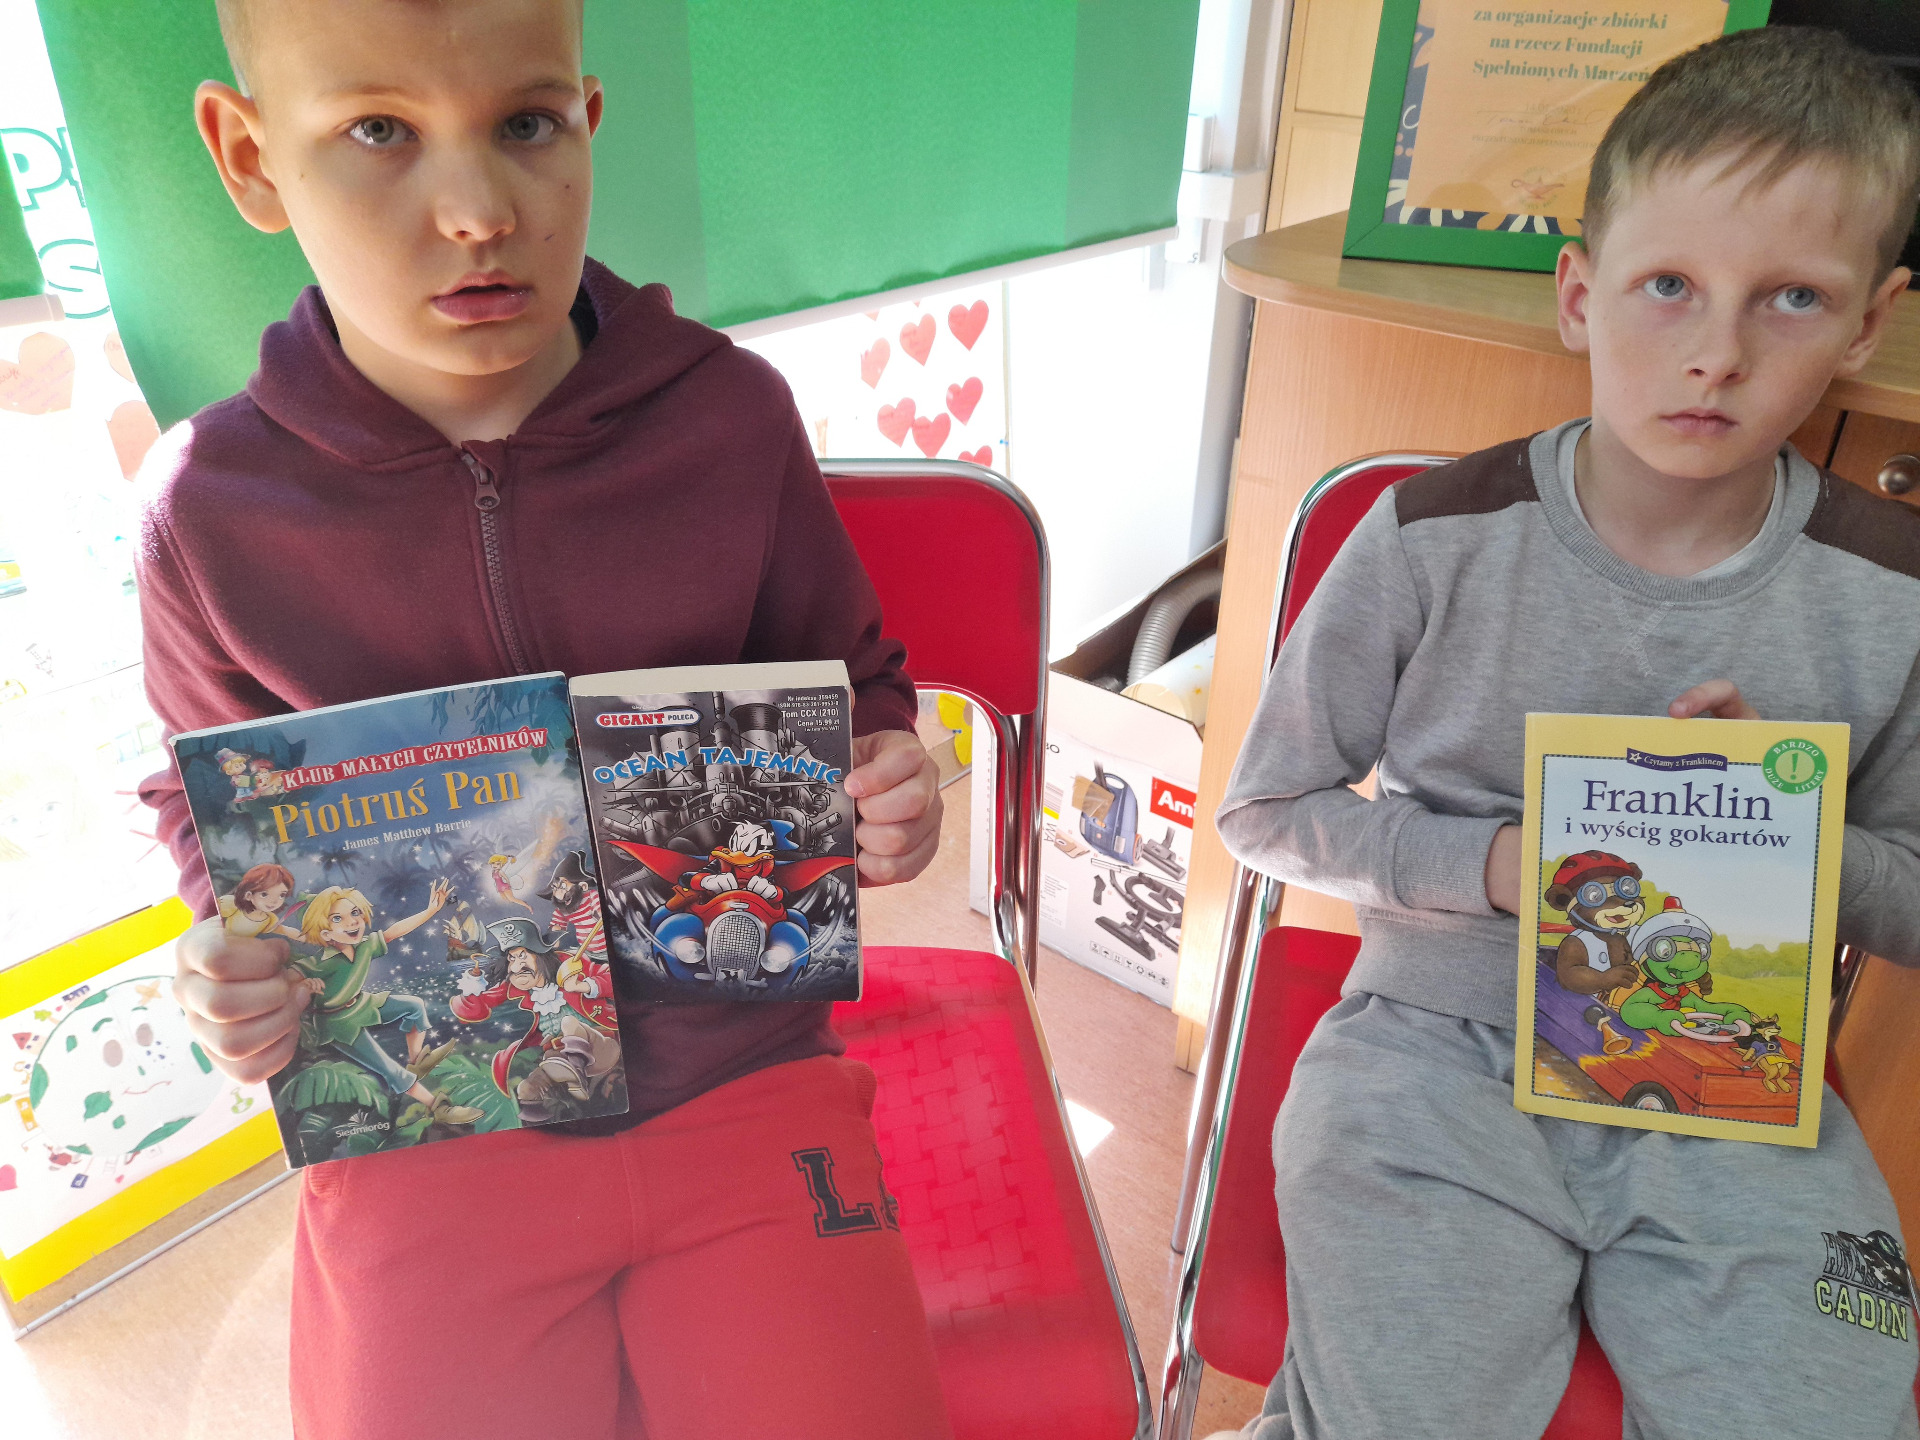 Akcja biblioteki szkolnej: Podaruj książkę ukraińskim dzieciom uczącym się w Oddziale Przygotowawczym naszej Szkoły - Obrazek 4